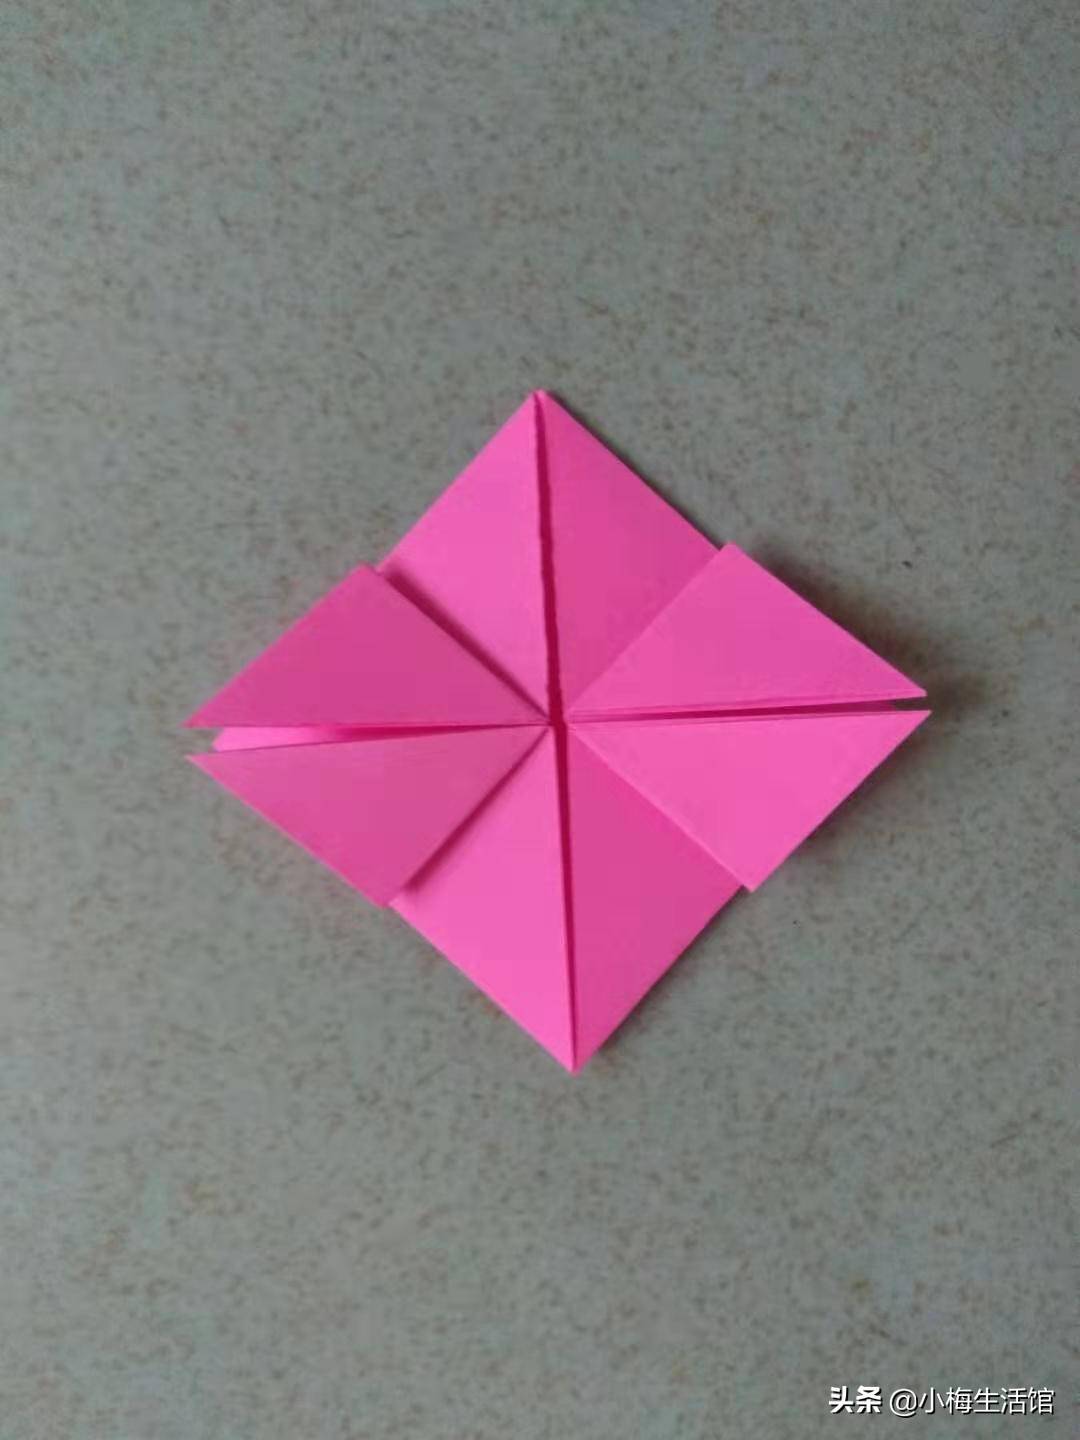 最漂亮的折纸爱心来了！折法真的很简单，看的我都心花怒放了